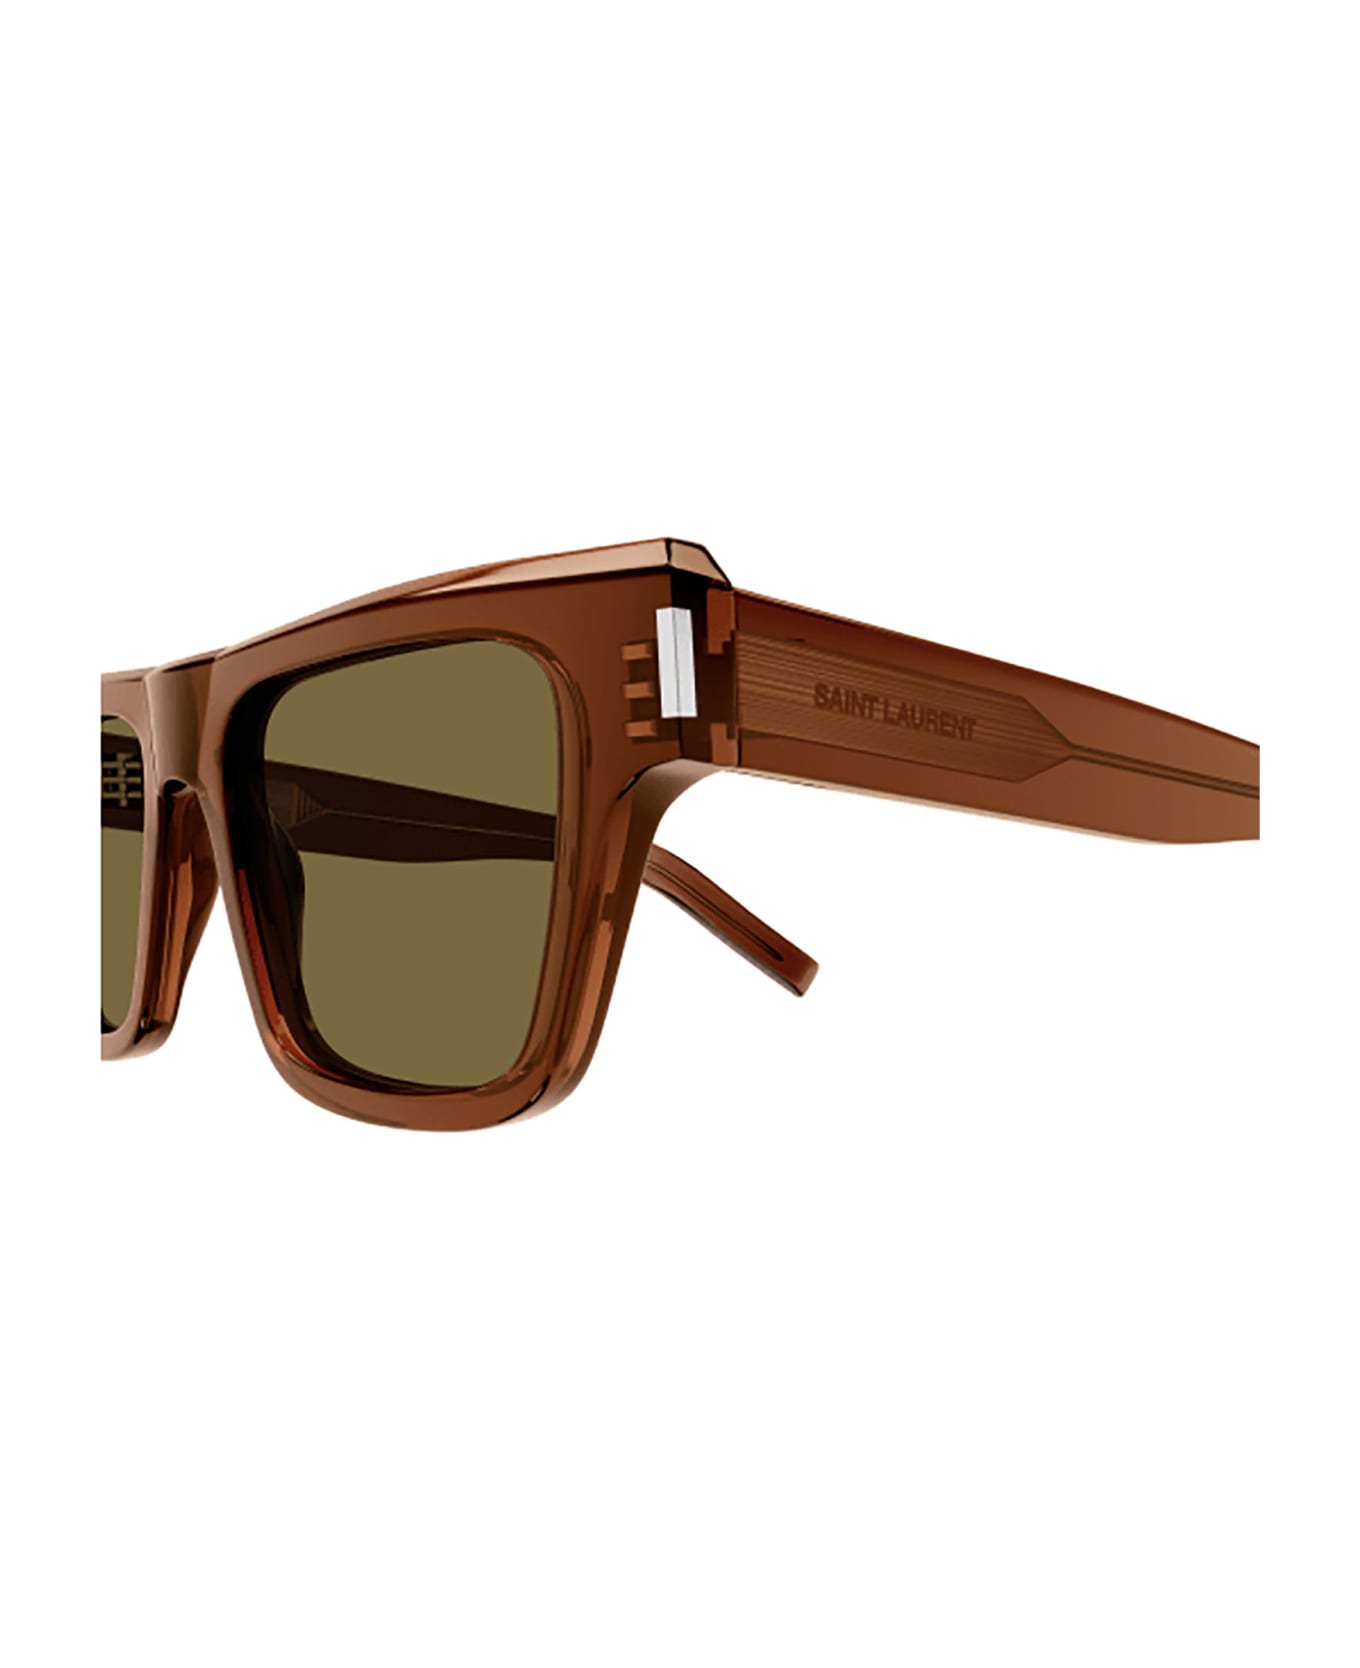 Saint Laurent Eyewear SL 469 Sunglasses - Brown Brown Brown